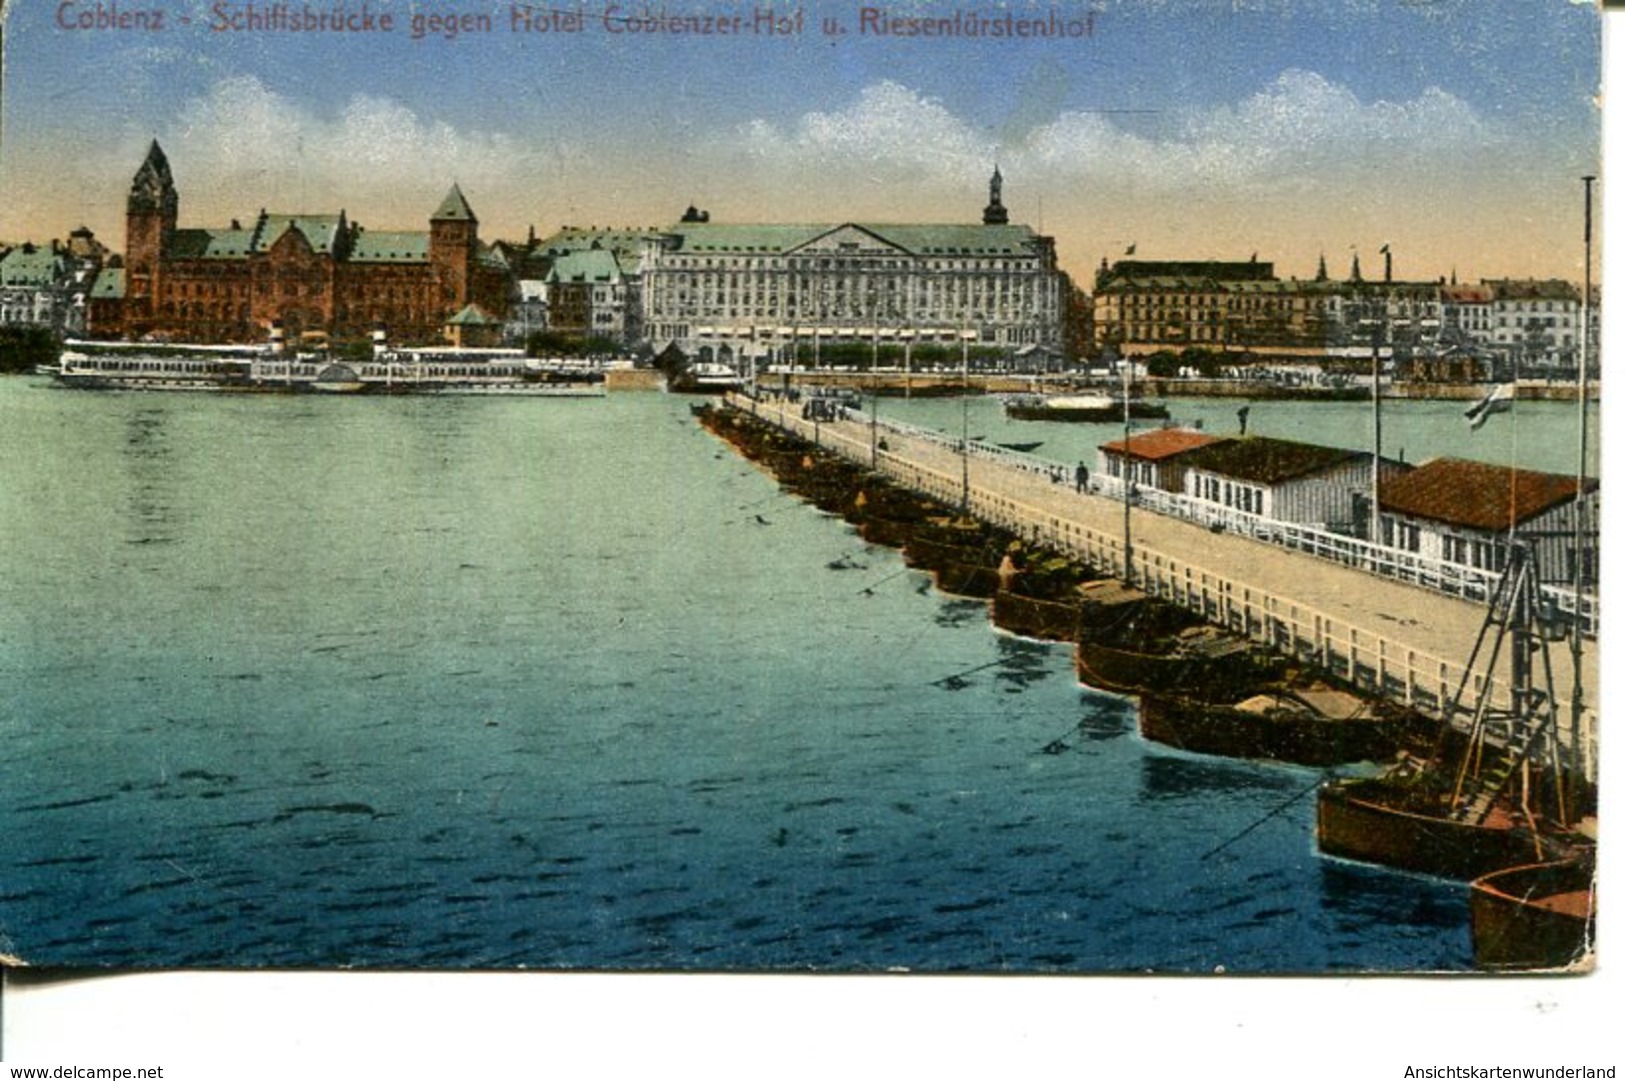 006161  Coblenz - Schiffsbrücke Gegen Hotel Coblenzer Hof U. Riesenfürstenhof  1924 - Koblenz